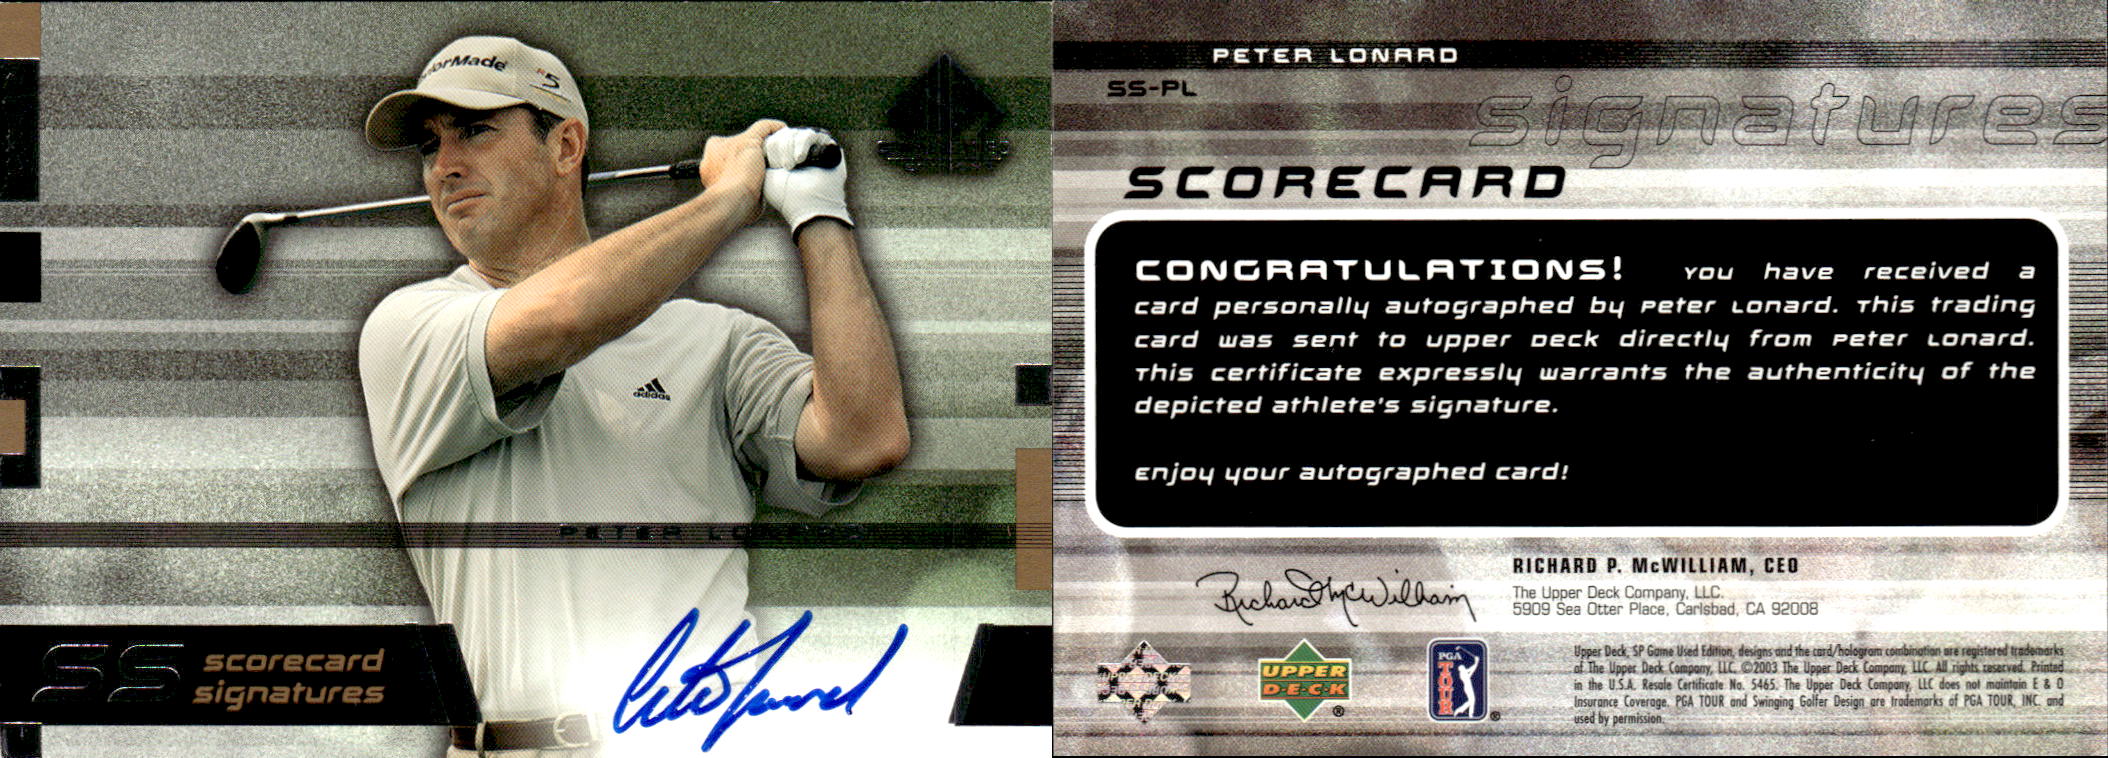 2003 SP Game Used Scorecard Signatures #PL Peter Lonard